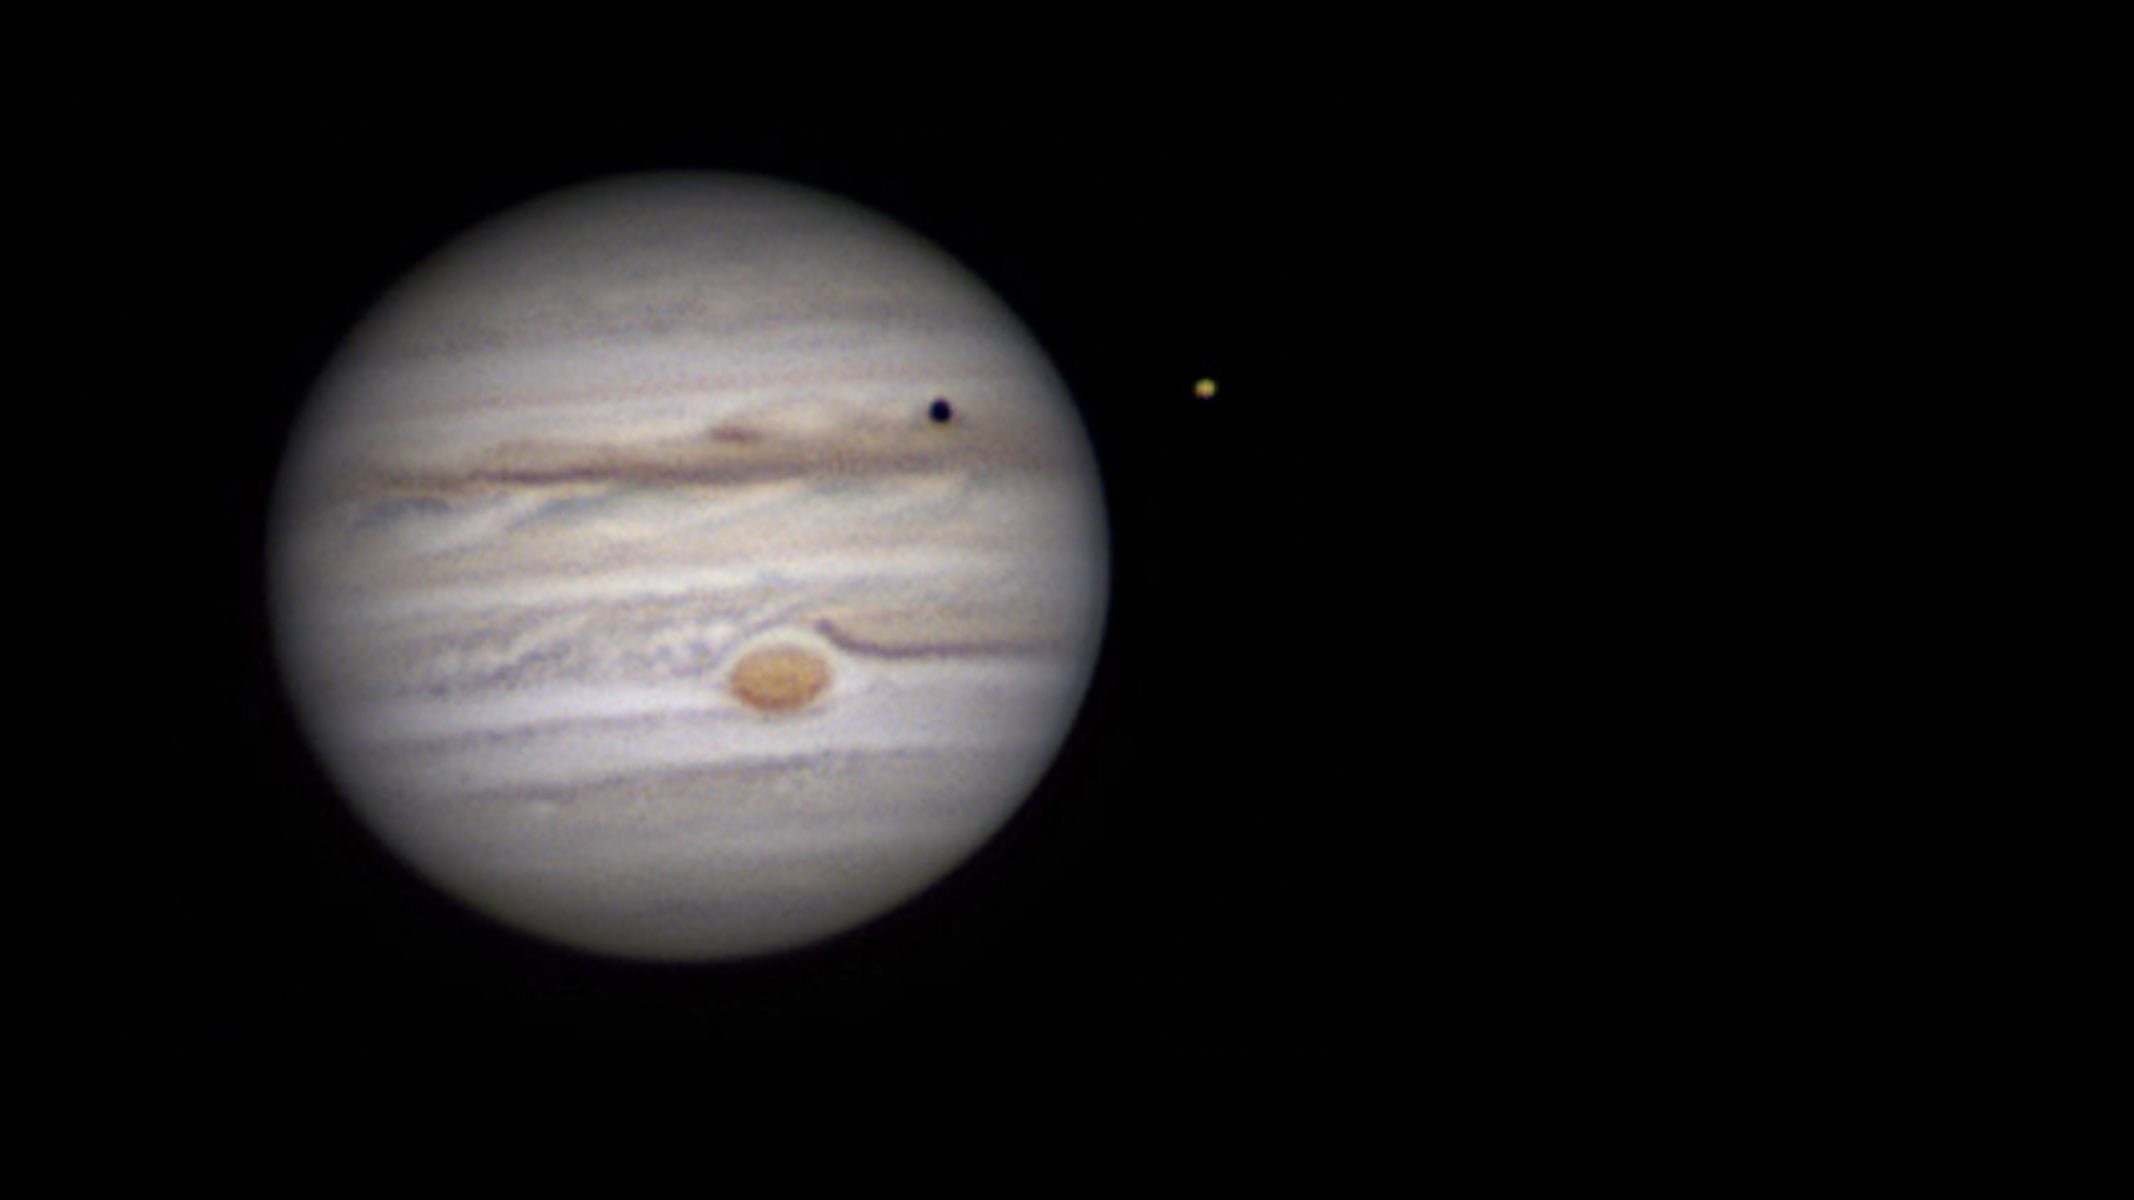 Celestron Gelişmiş Teleskopu tarafından çekilen Jüpiter'in görüntüsü